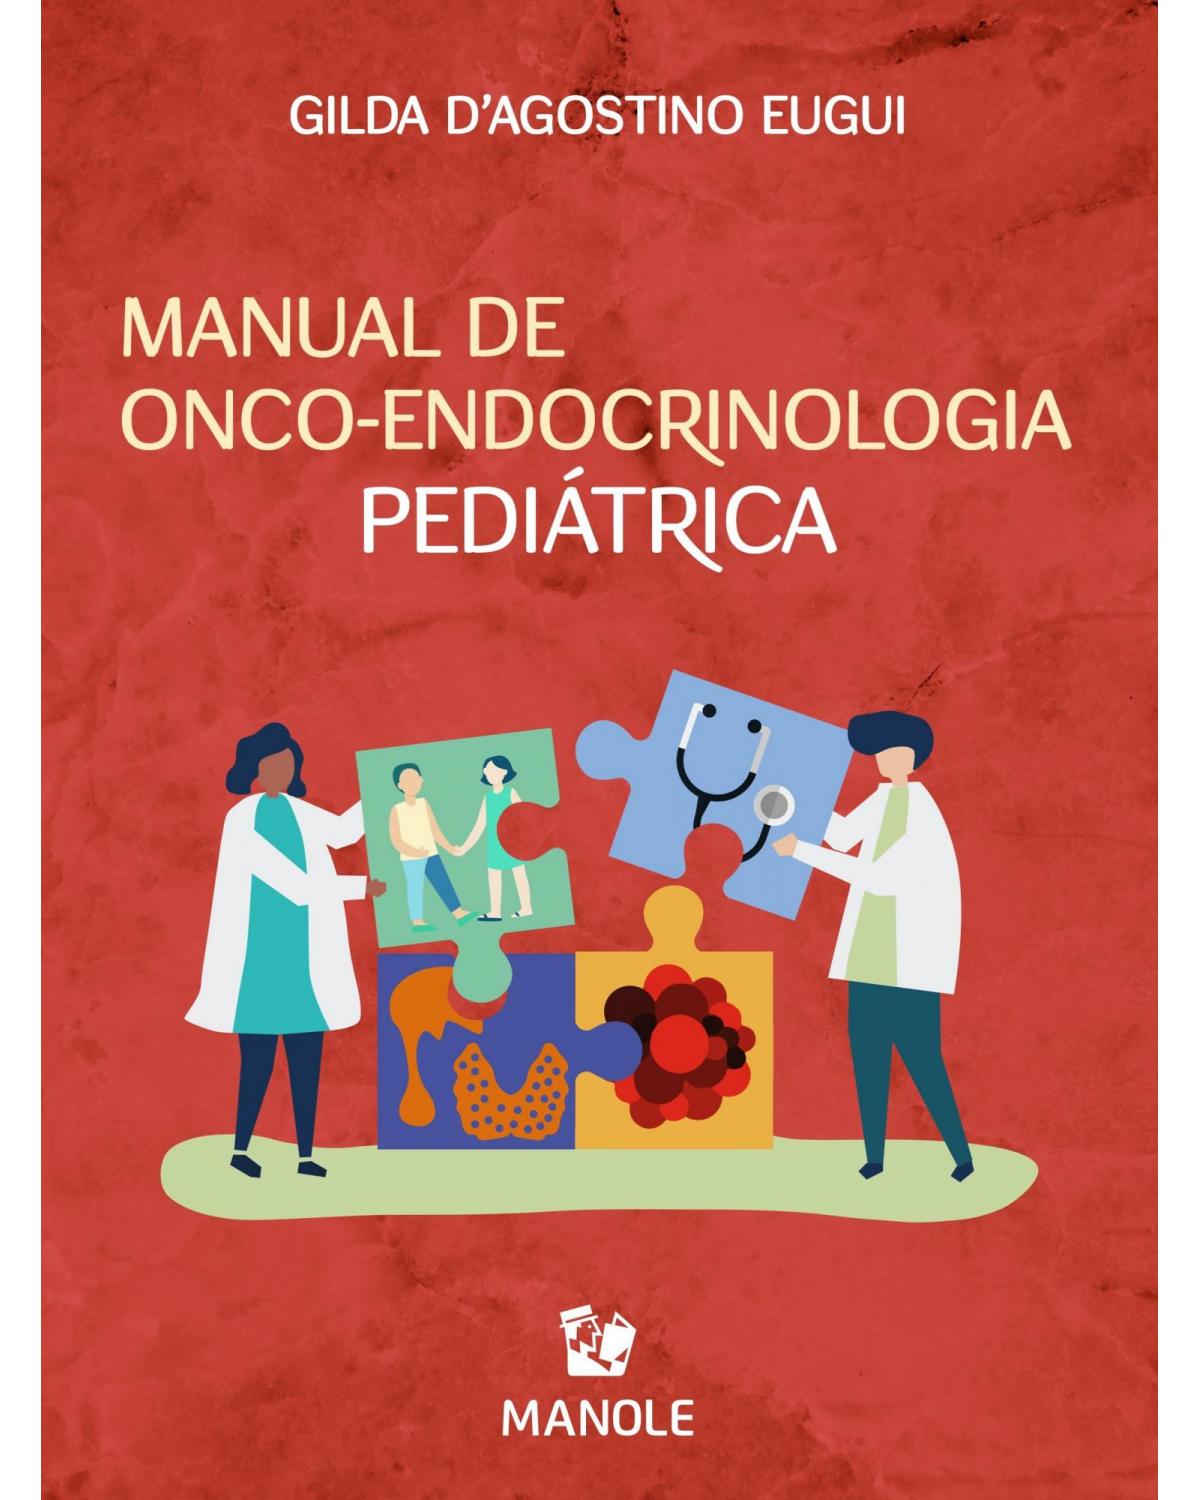 Manual de onco-endocrinologia pediátrica - 1ª Edição | 2021